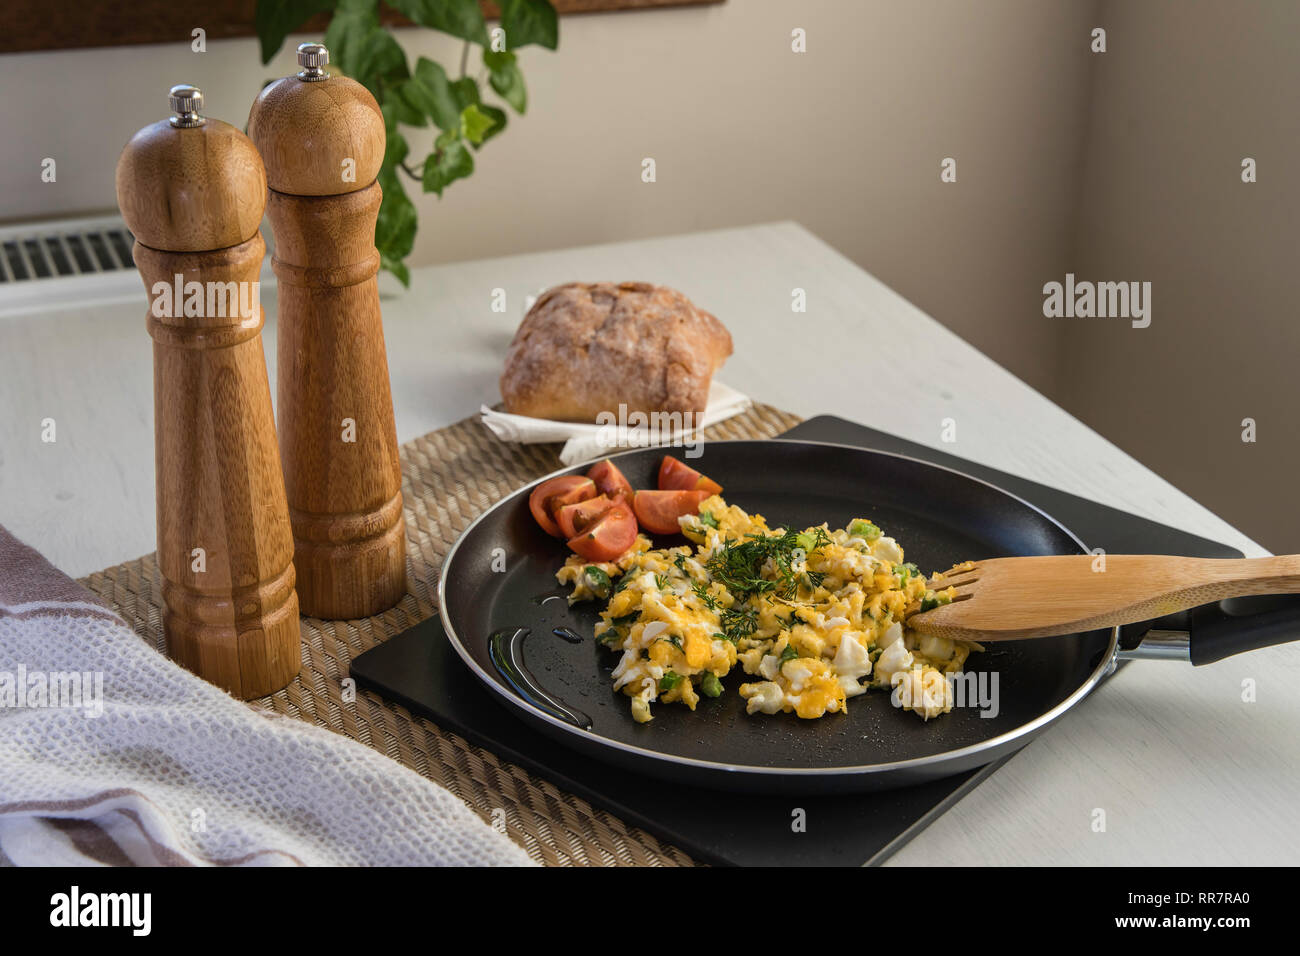 Dans la casserole d'oeufs brouillés, Style moldave Banque D'Images